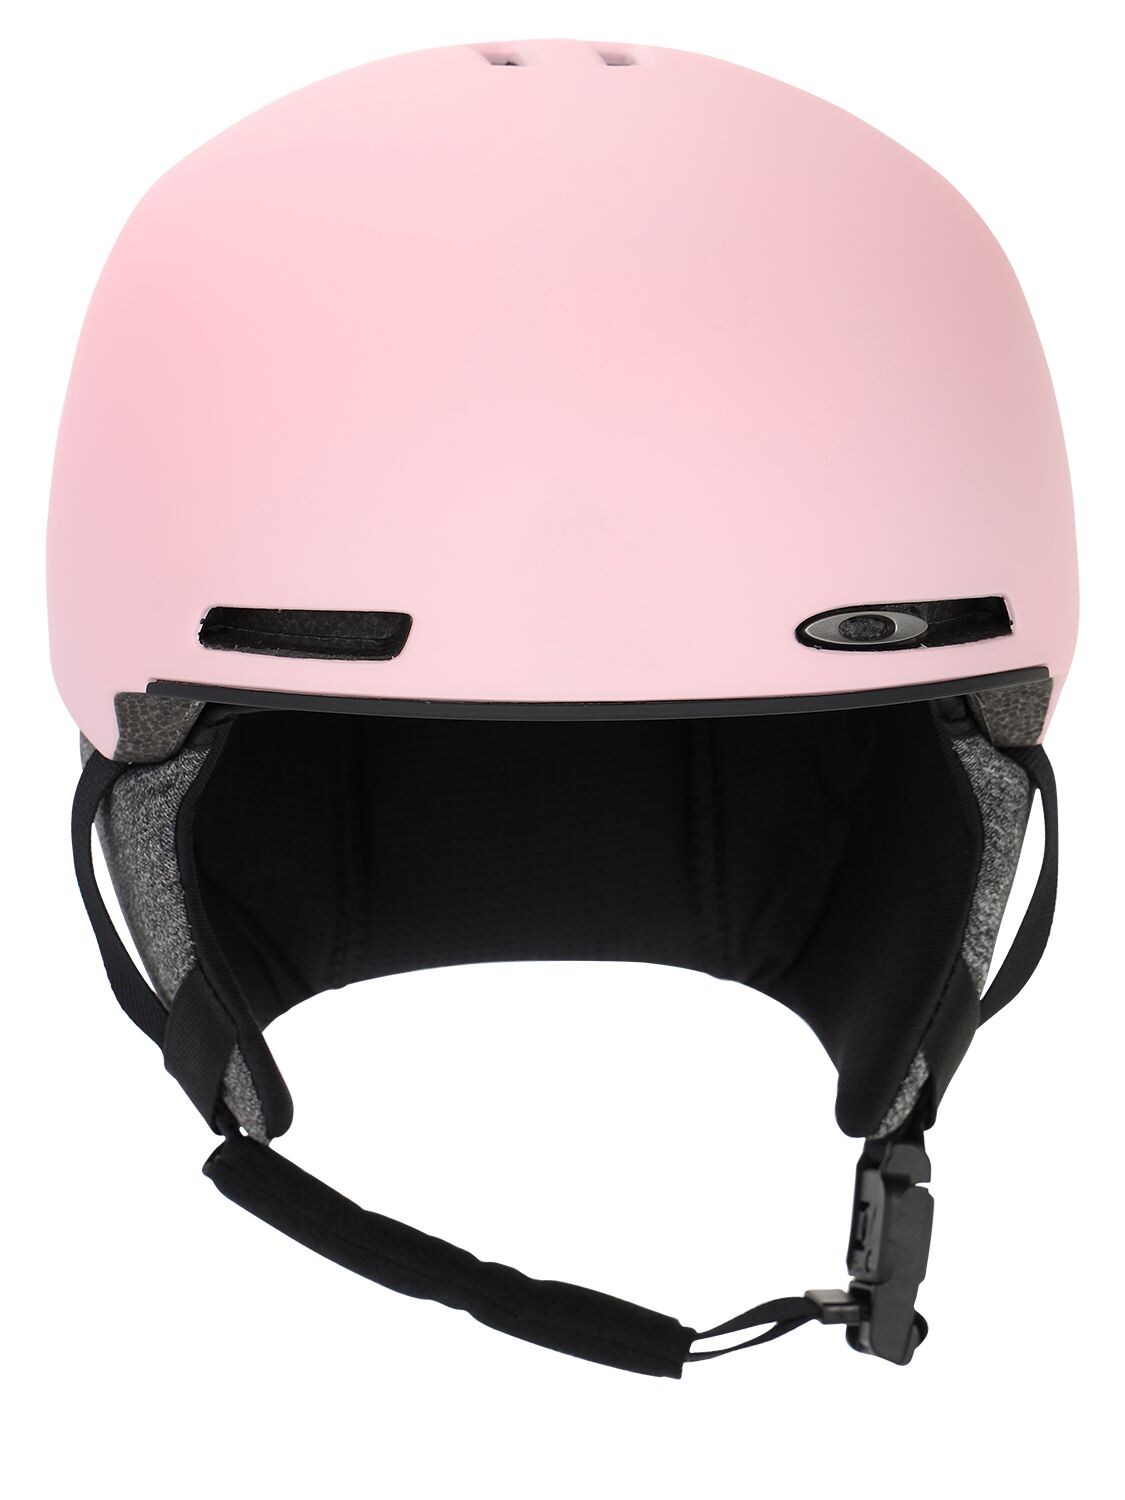 Oakley Babies' Mod1 Youth Snow Helmet In Light Pink